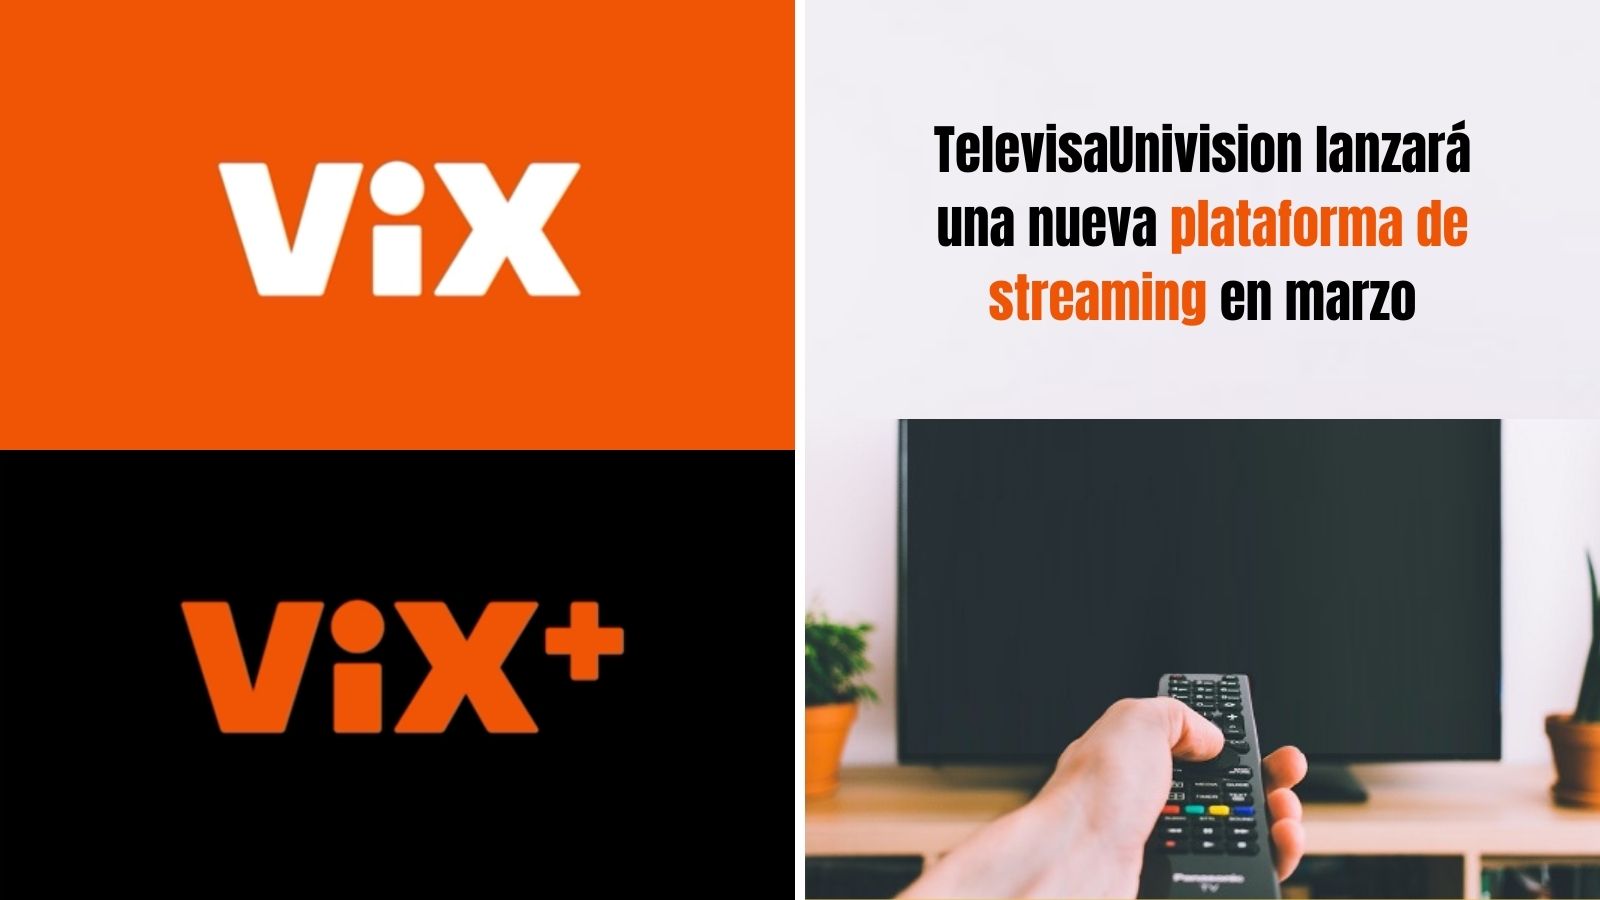 TelevisaUnivision anuncia plataforma de streaming ViX y ViX+